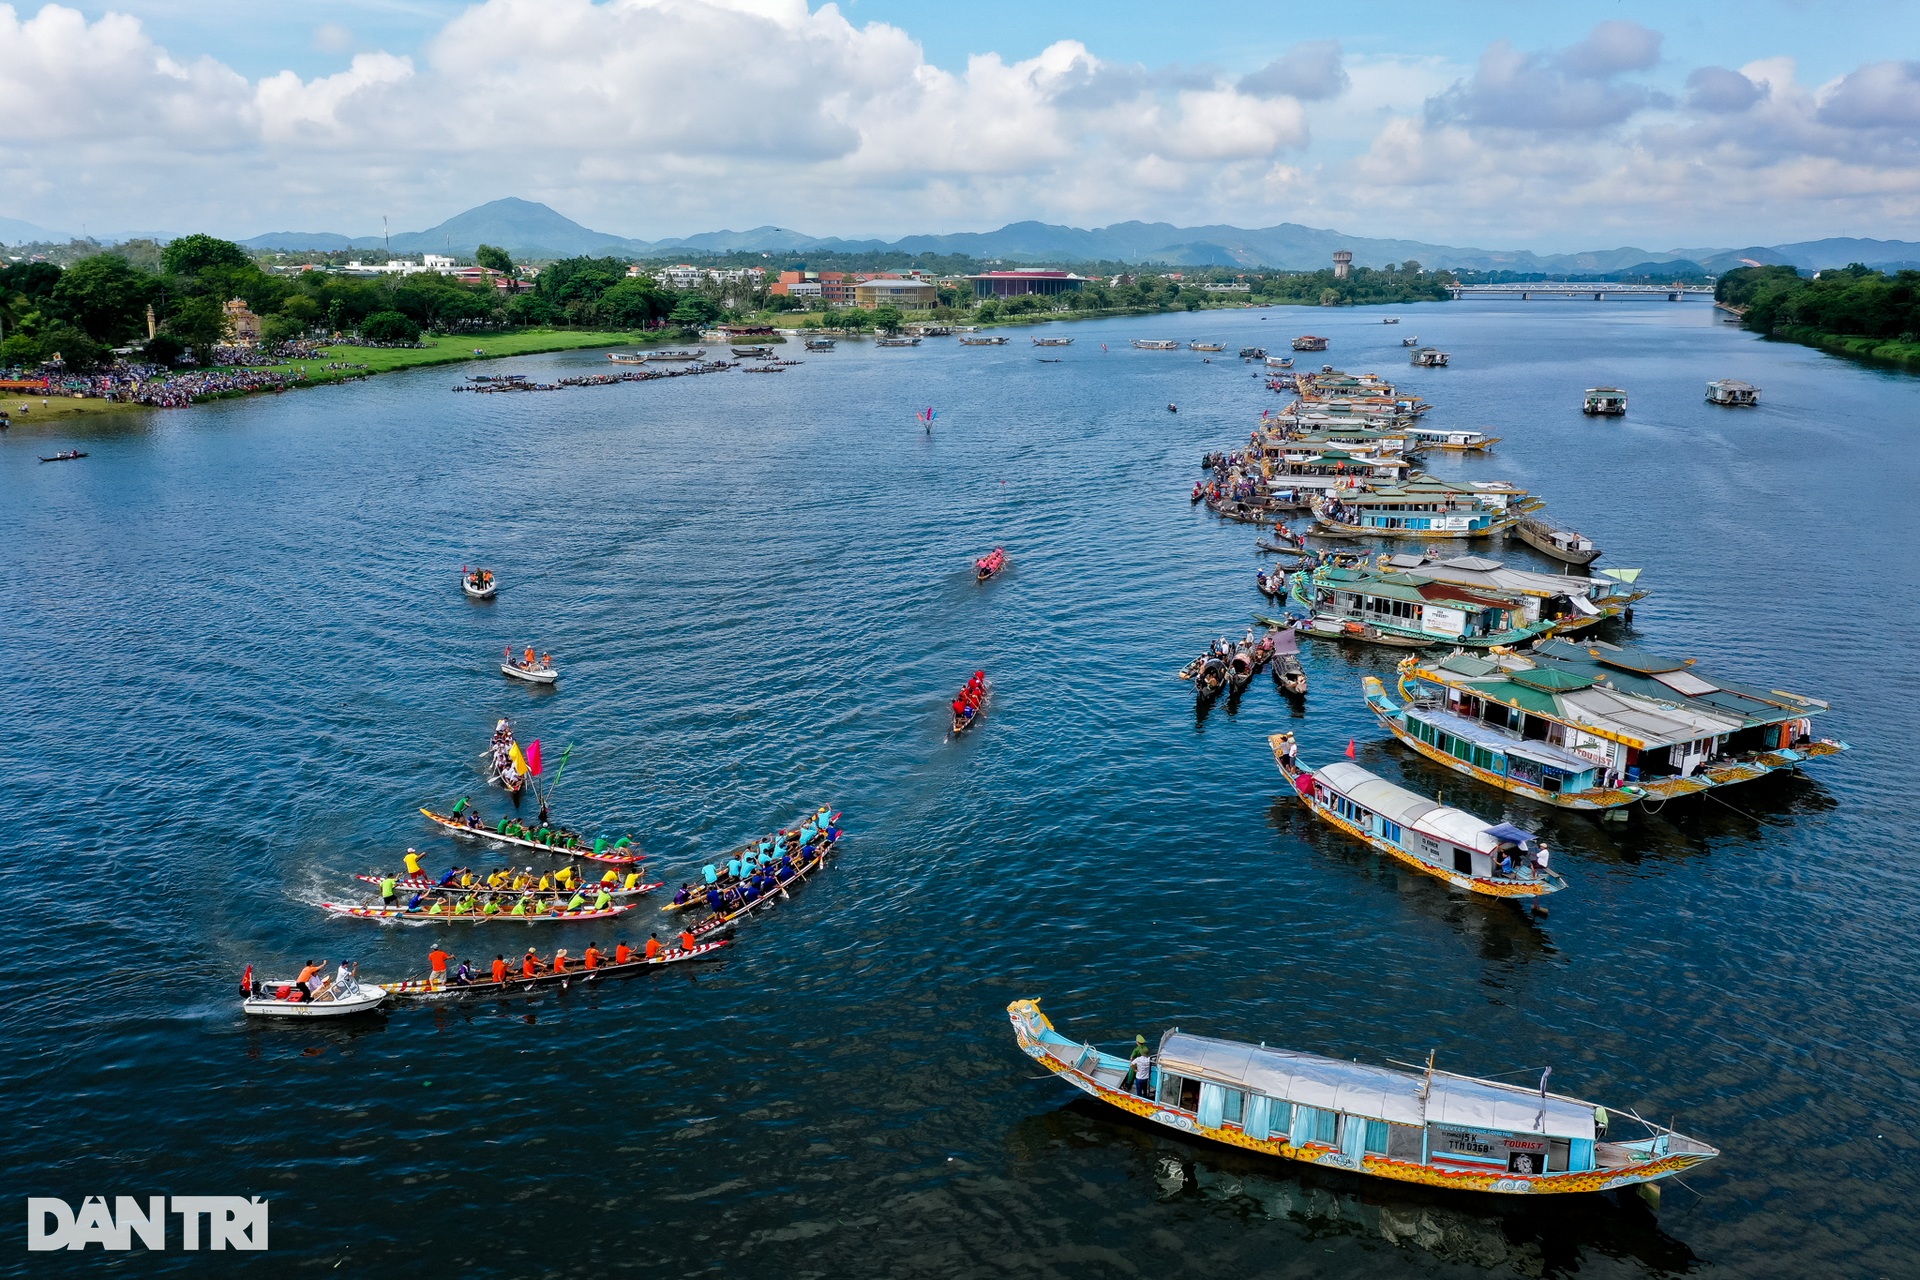 Nét thơ mộng trường tồn của dòng sông di sản chảy qua thành phố Huế - 10